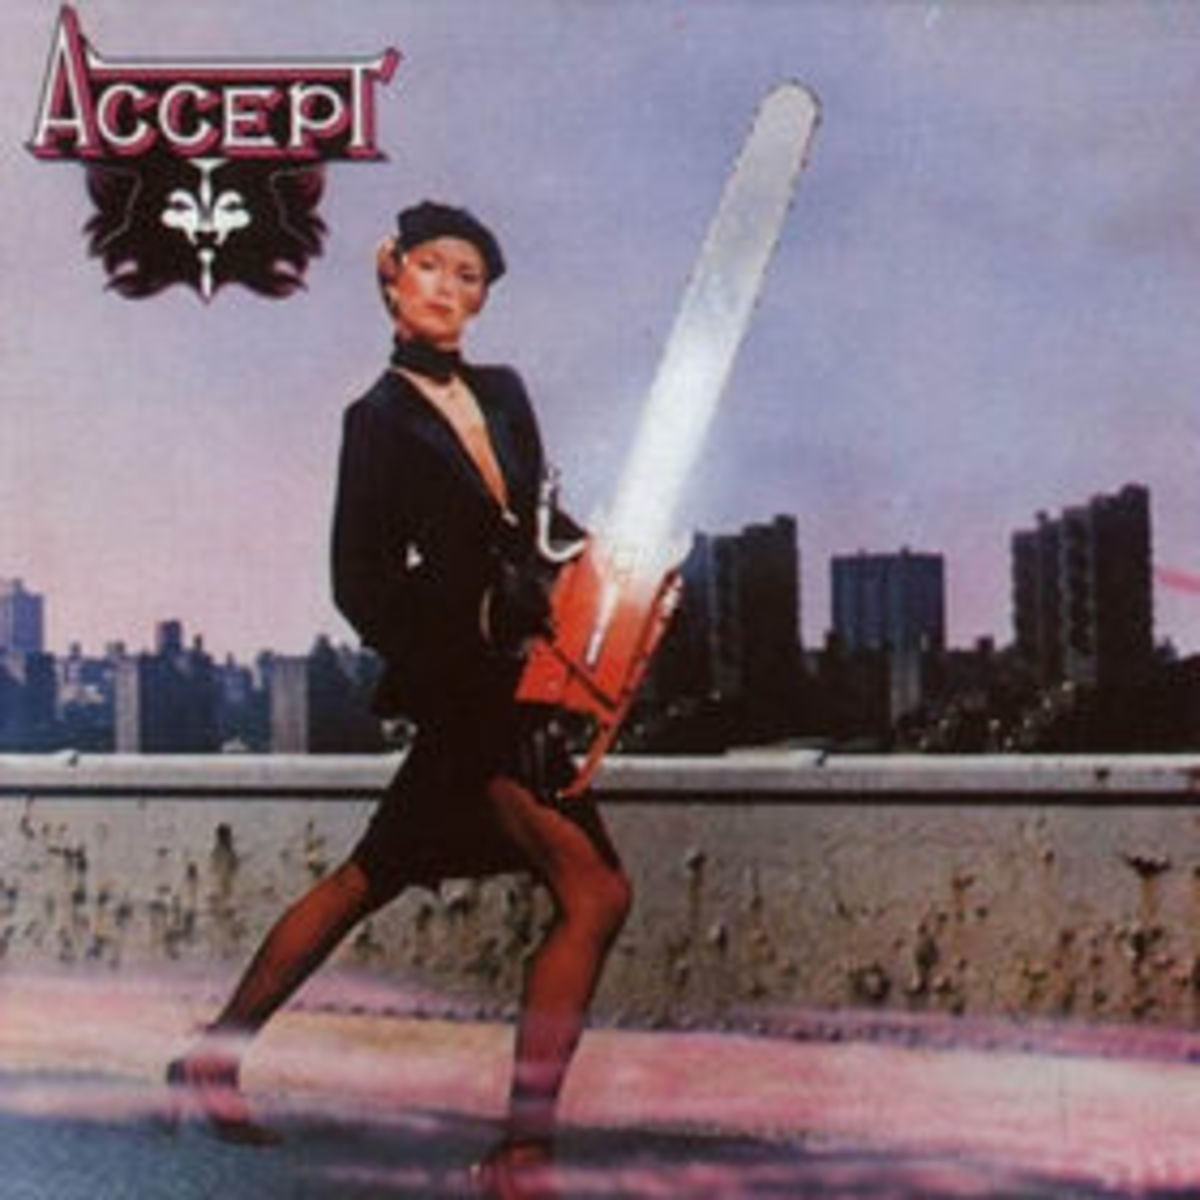 Accept_-_Accept